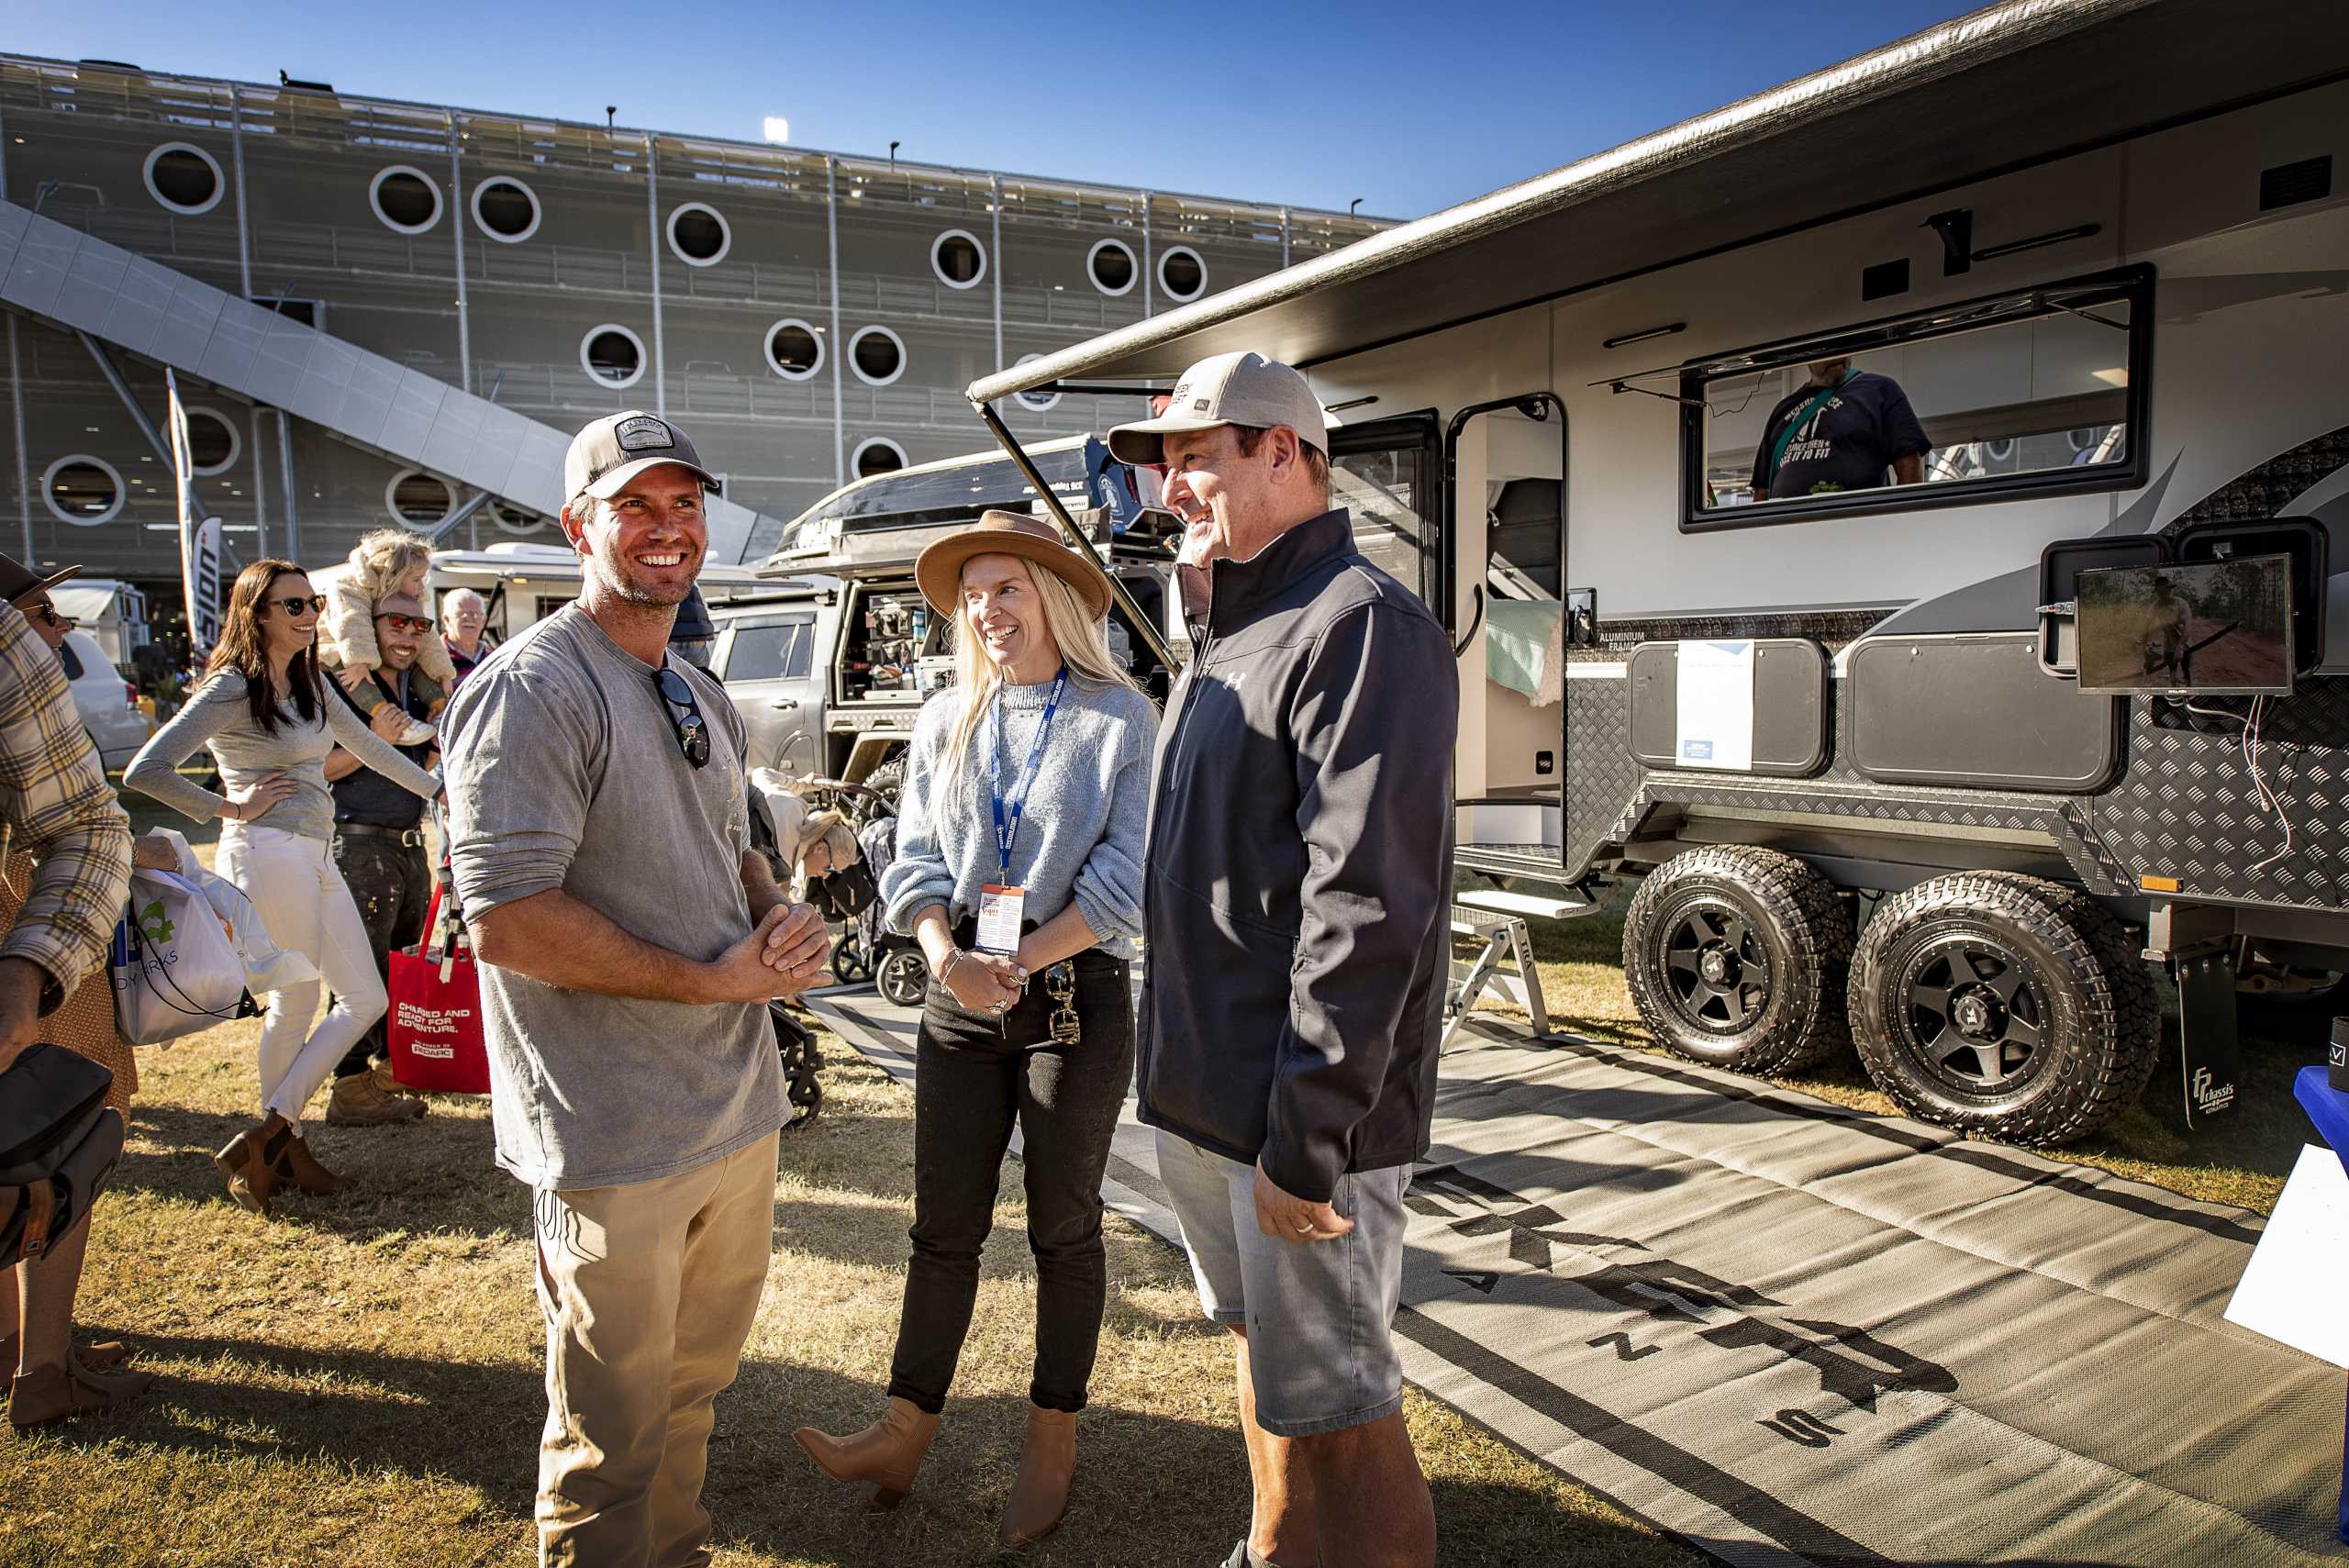 Sunseeker Caravans Highlights from the Caravan SUPERSHOW in Brisbane